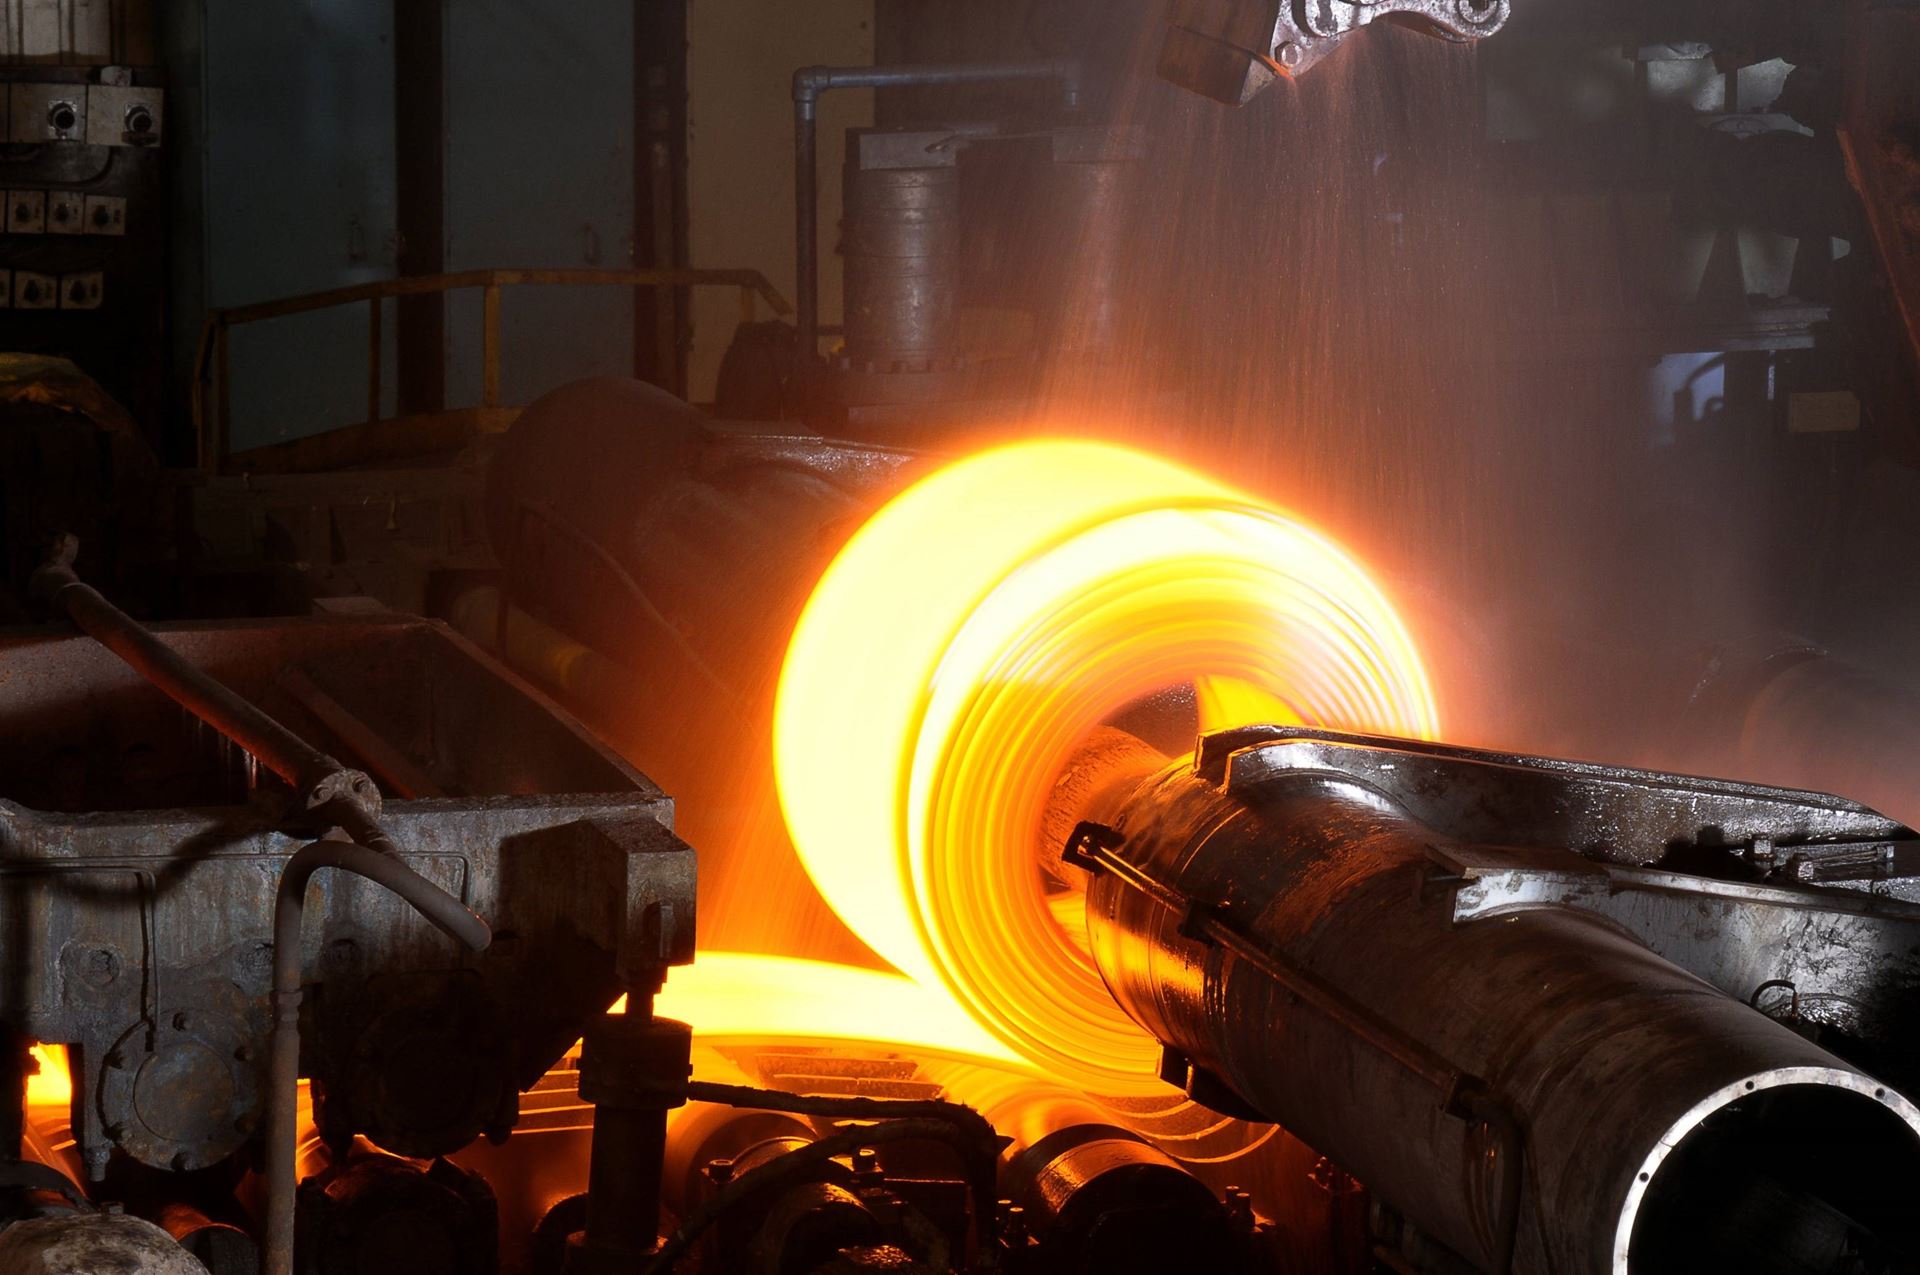 ABD'nin ham çelik üretimi arttı